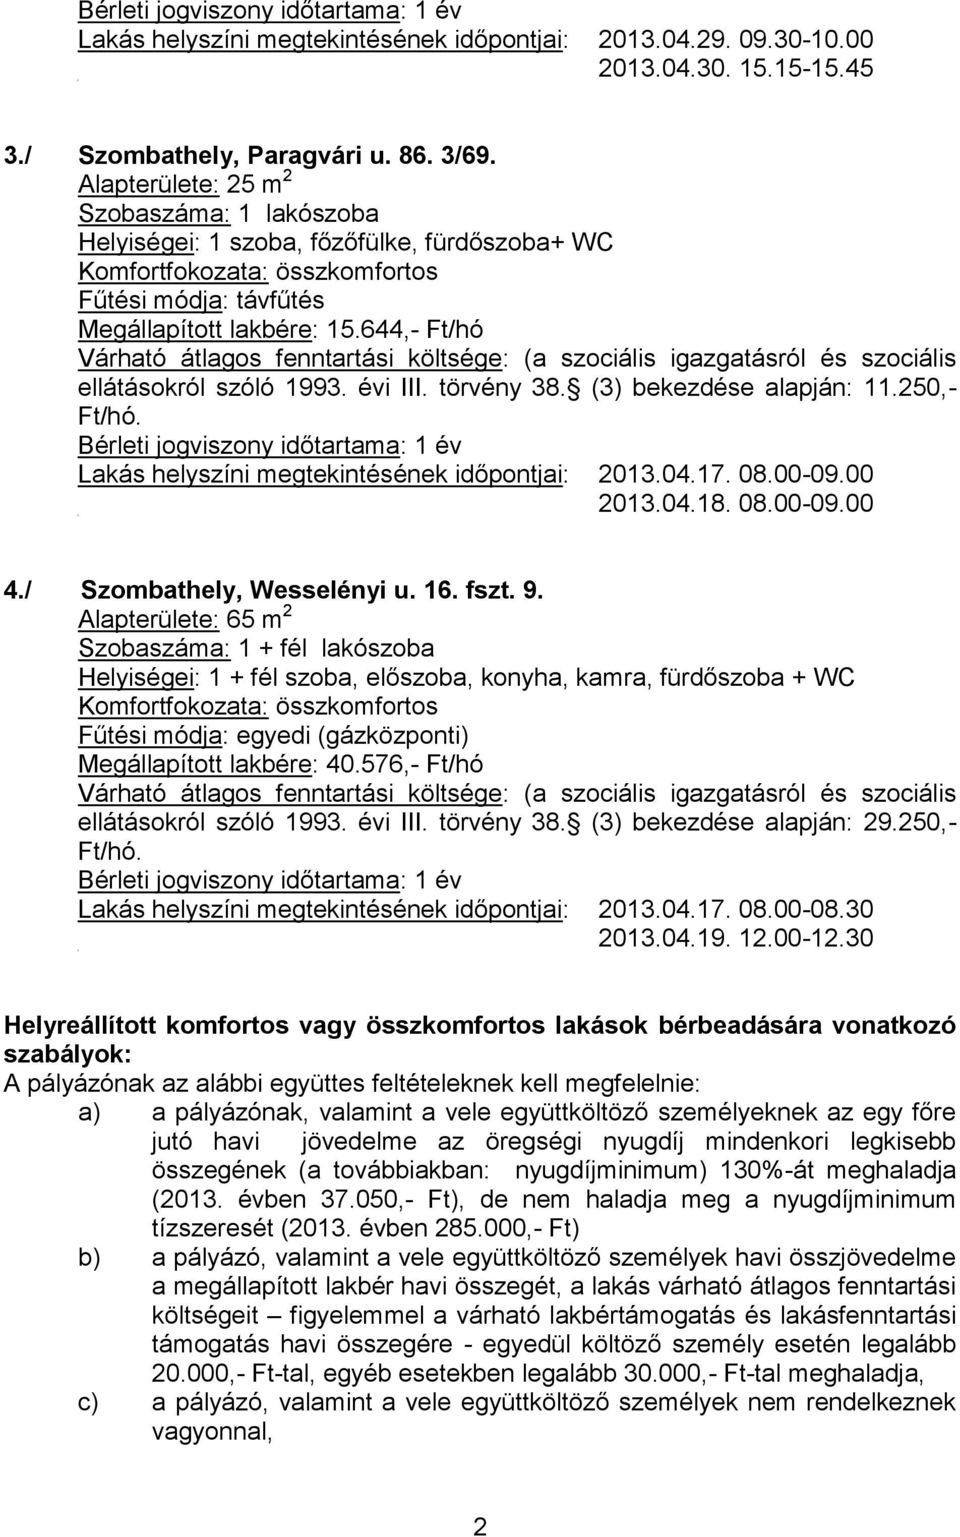 (3) bekezdése alapján: 11.250,- Ft/hó. Bérleti jogviszony időtartama: 1 év Lakás helyszíni megtekintésének időpontjai: 2013.04.17. 08.00-09.00 2013.04.18. 08.00-09.00 4./ Szombathely, Wesselényi u.